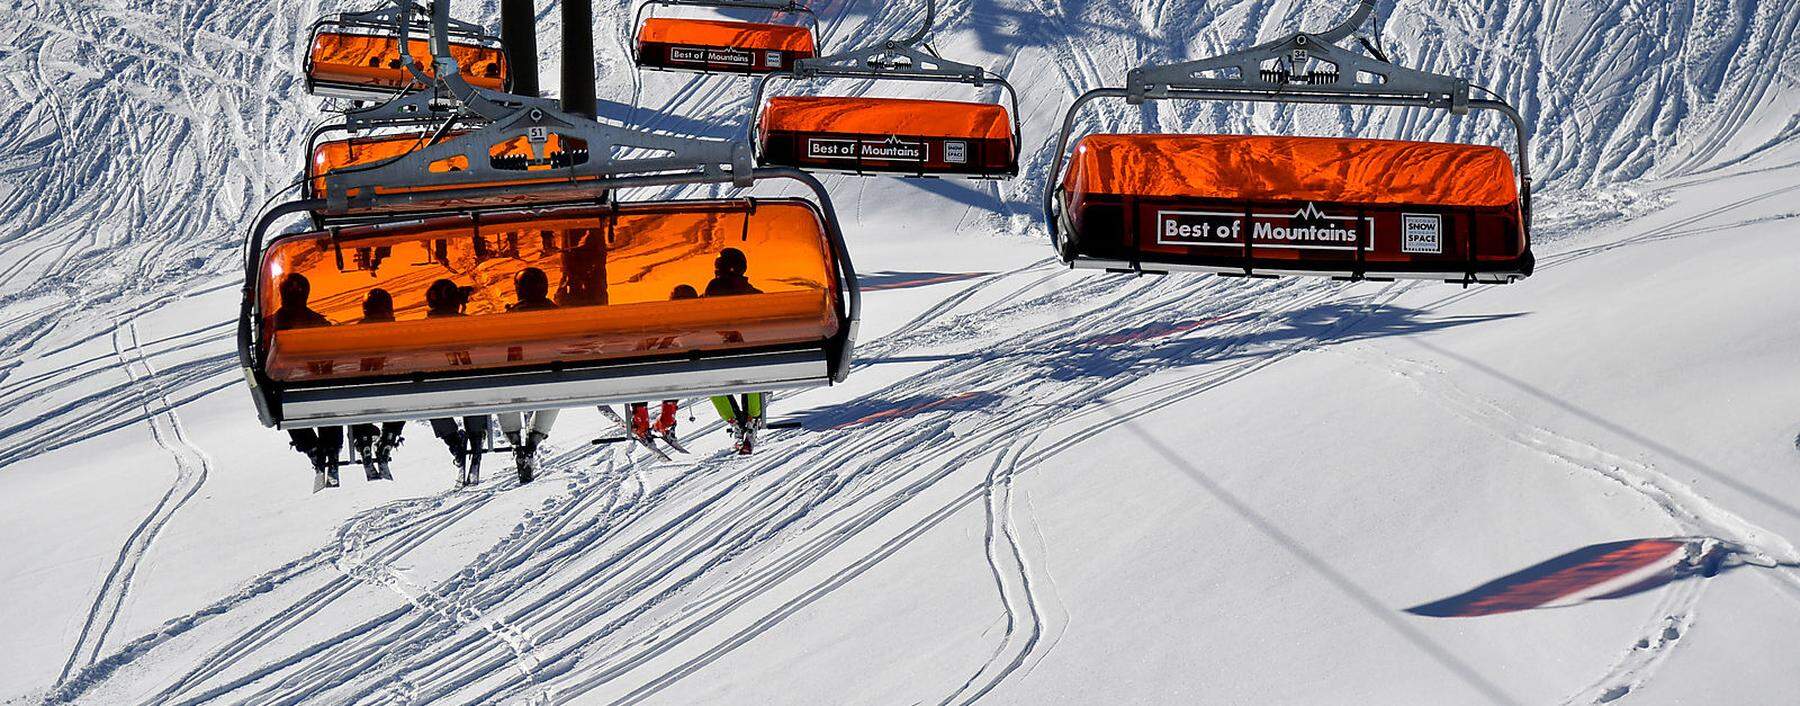 Noch stehen die Lifte still, ab 24. Dezember ist Skifahren aber erlaubt - und bleibt das auch während des Lockdowns.